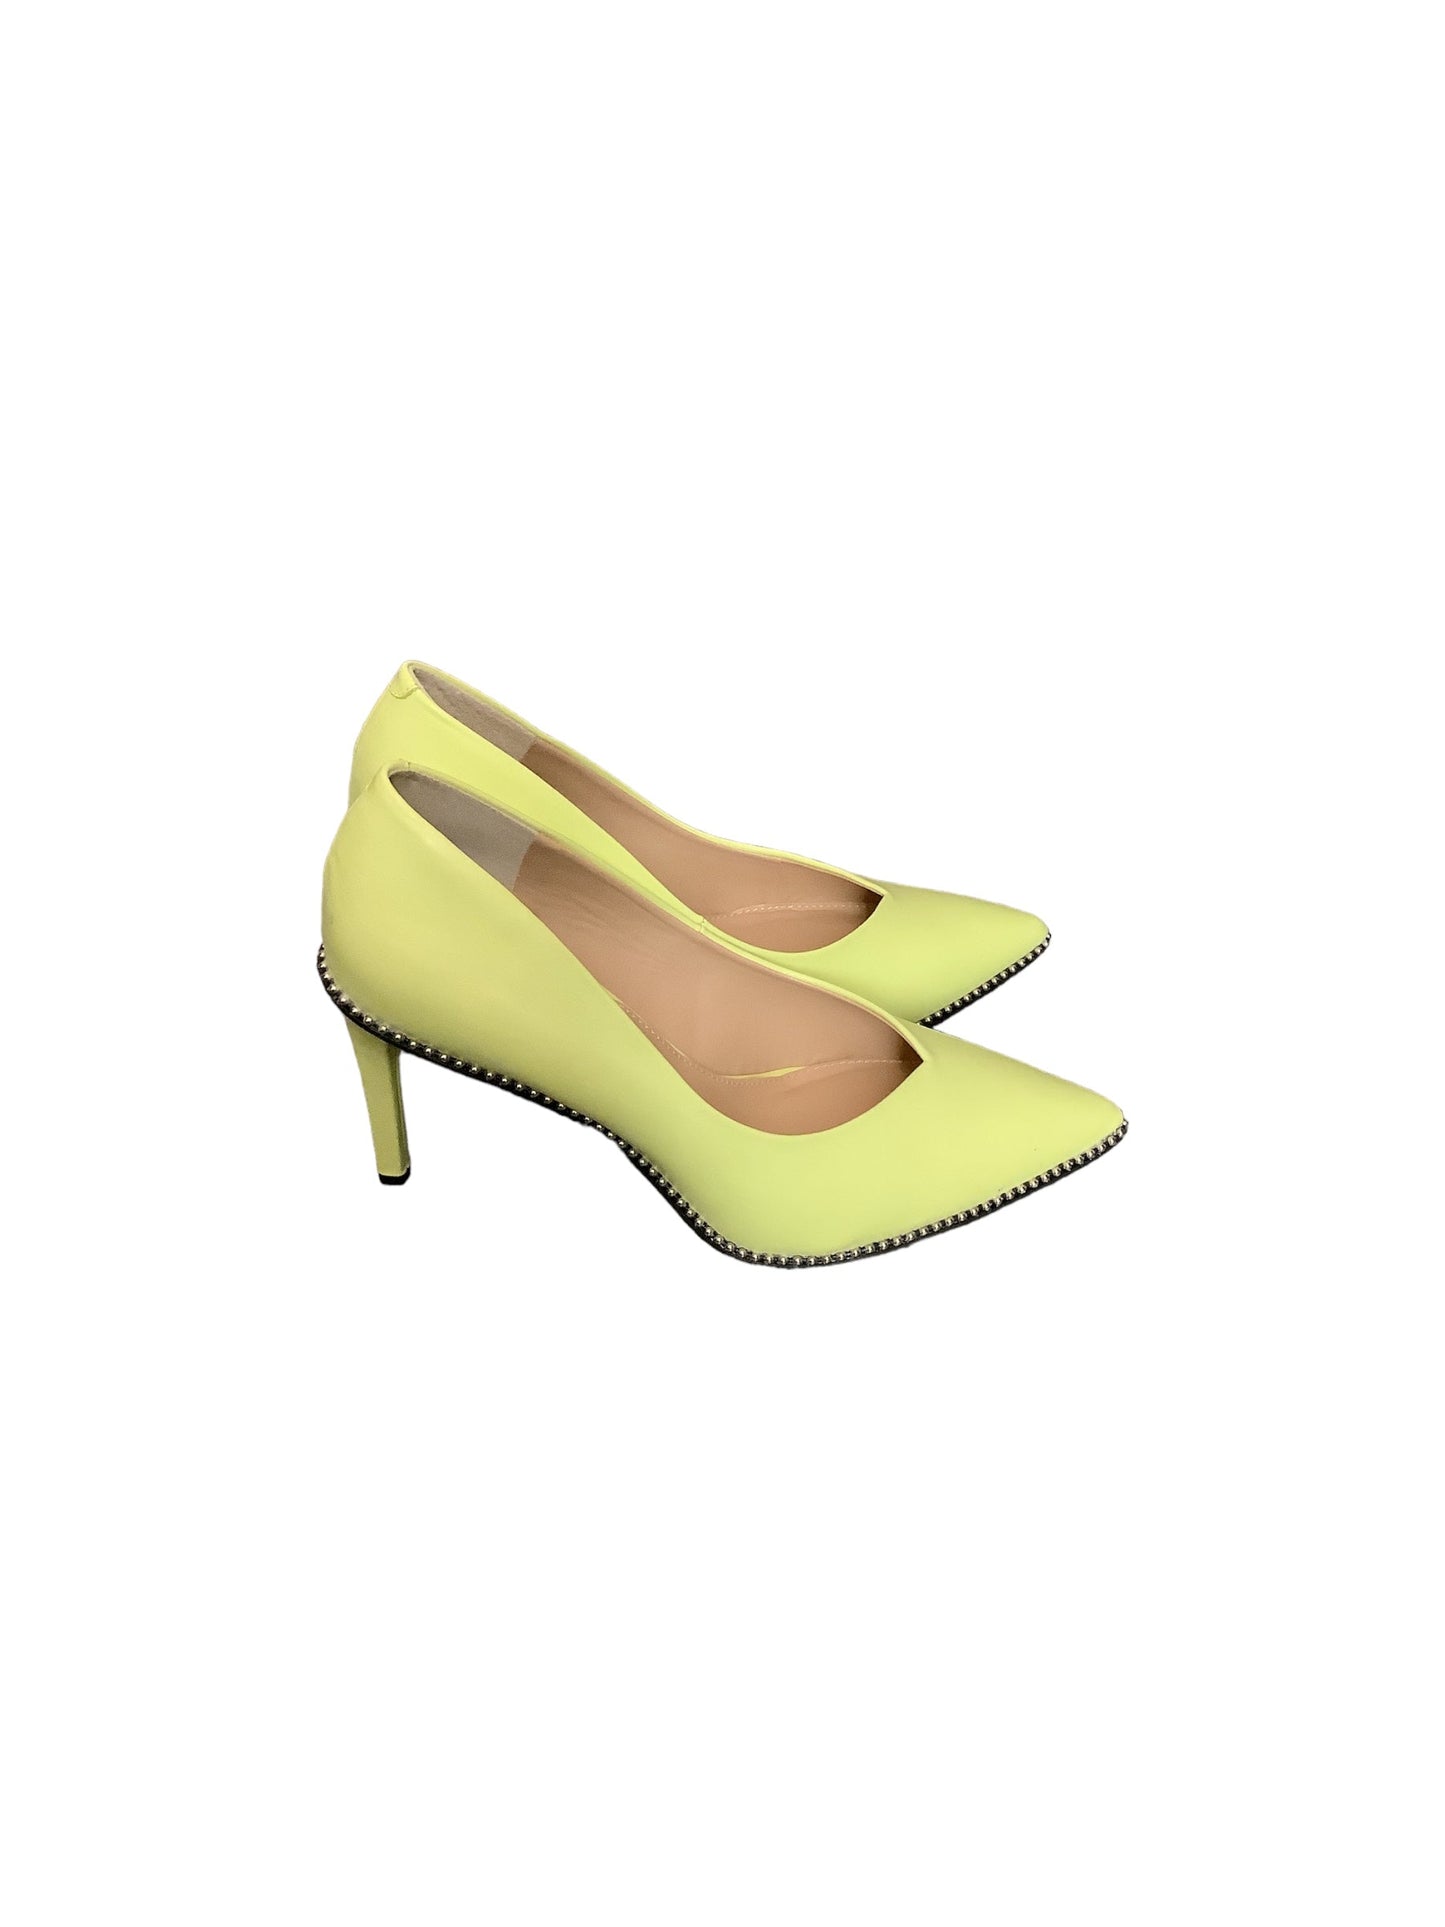 Yellow Shoes Heels Stiletto Bar Iii, Size 11